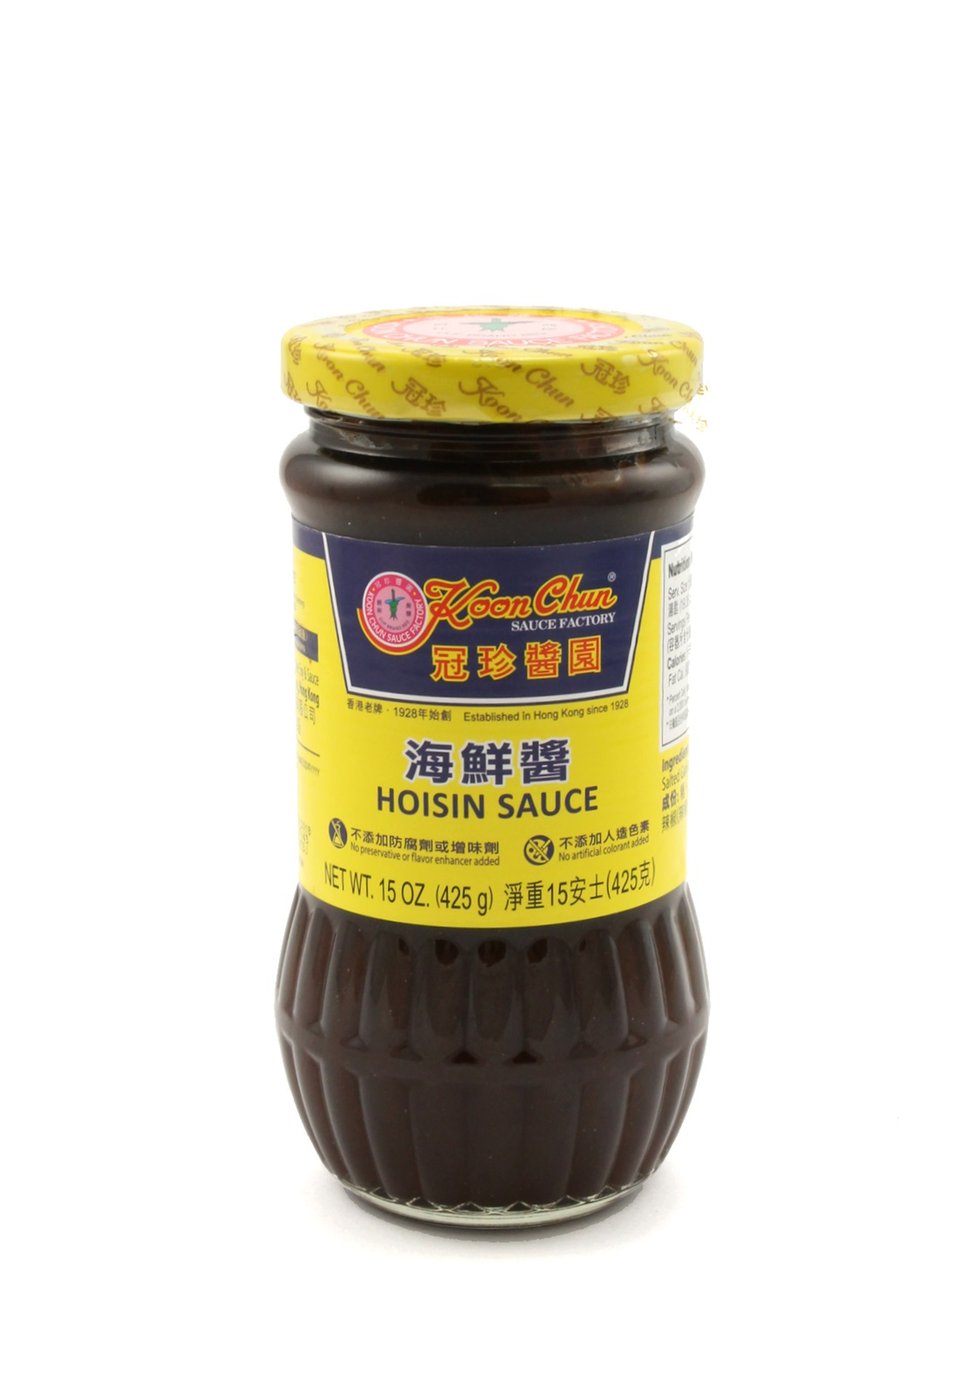 Koon Chun Hoisin Sauce image zoom